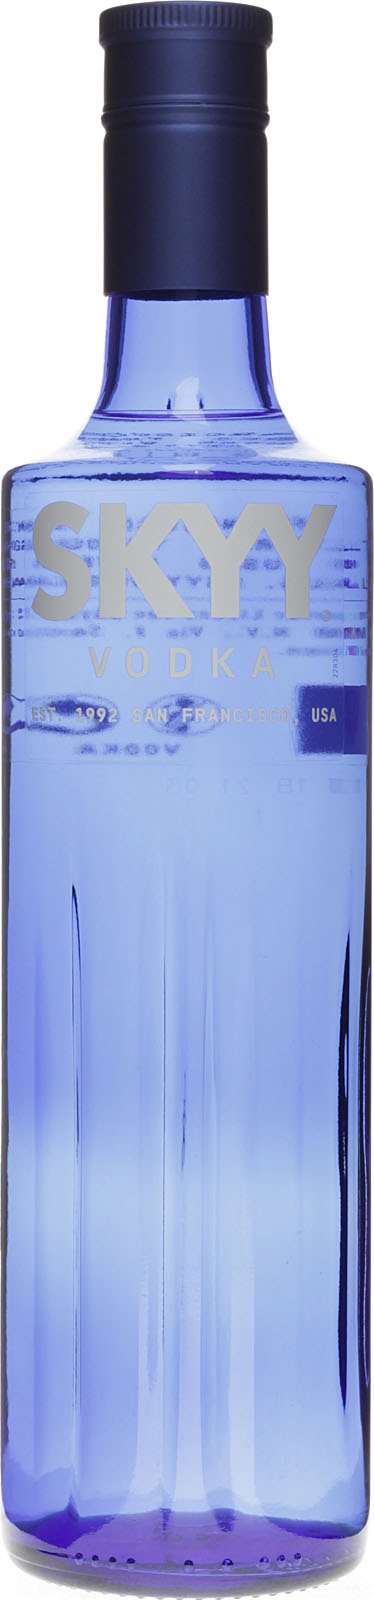 Skyy Vodka Blue günstig online kaufen bei